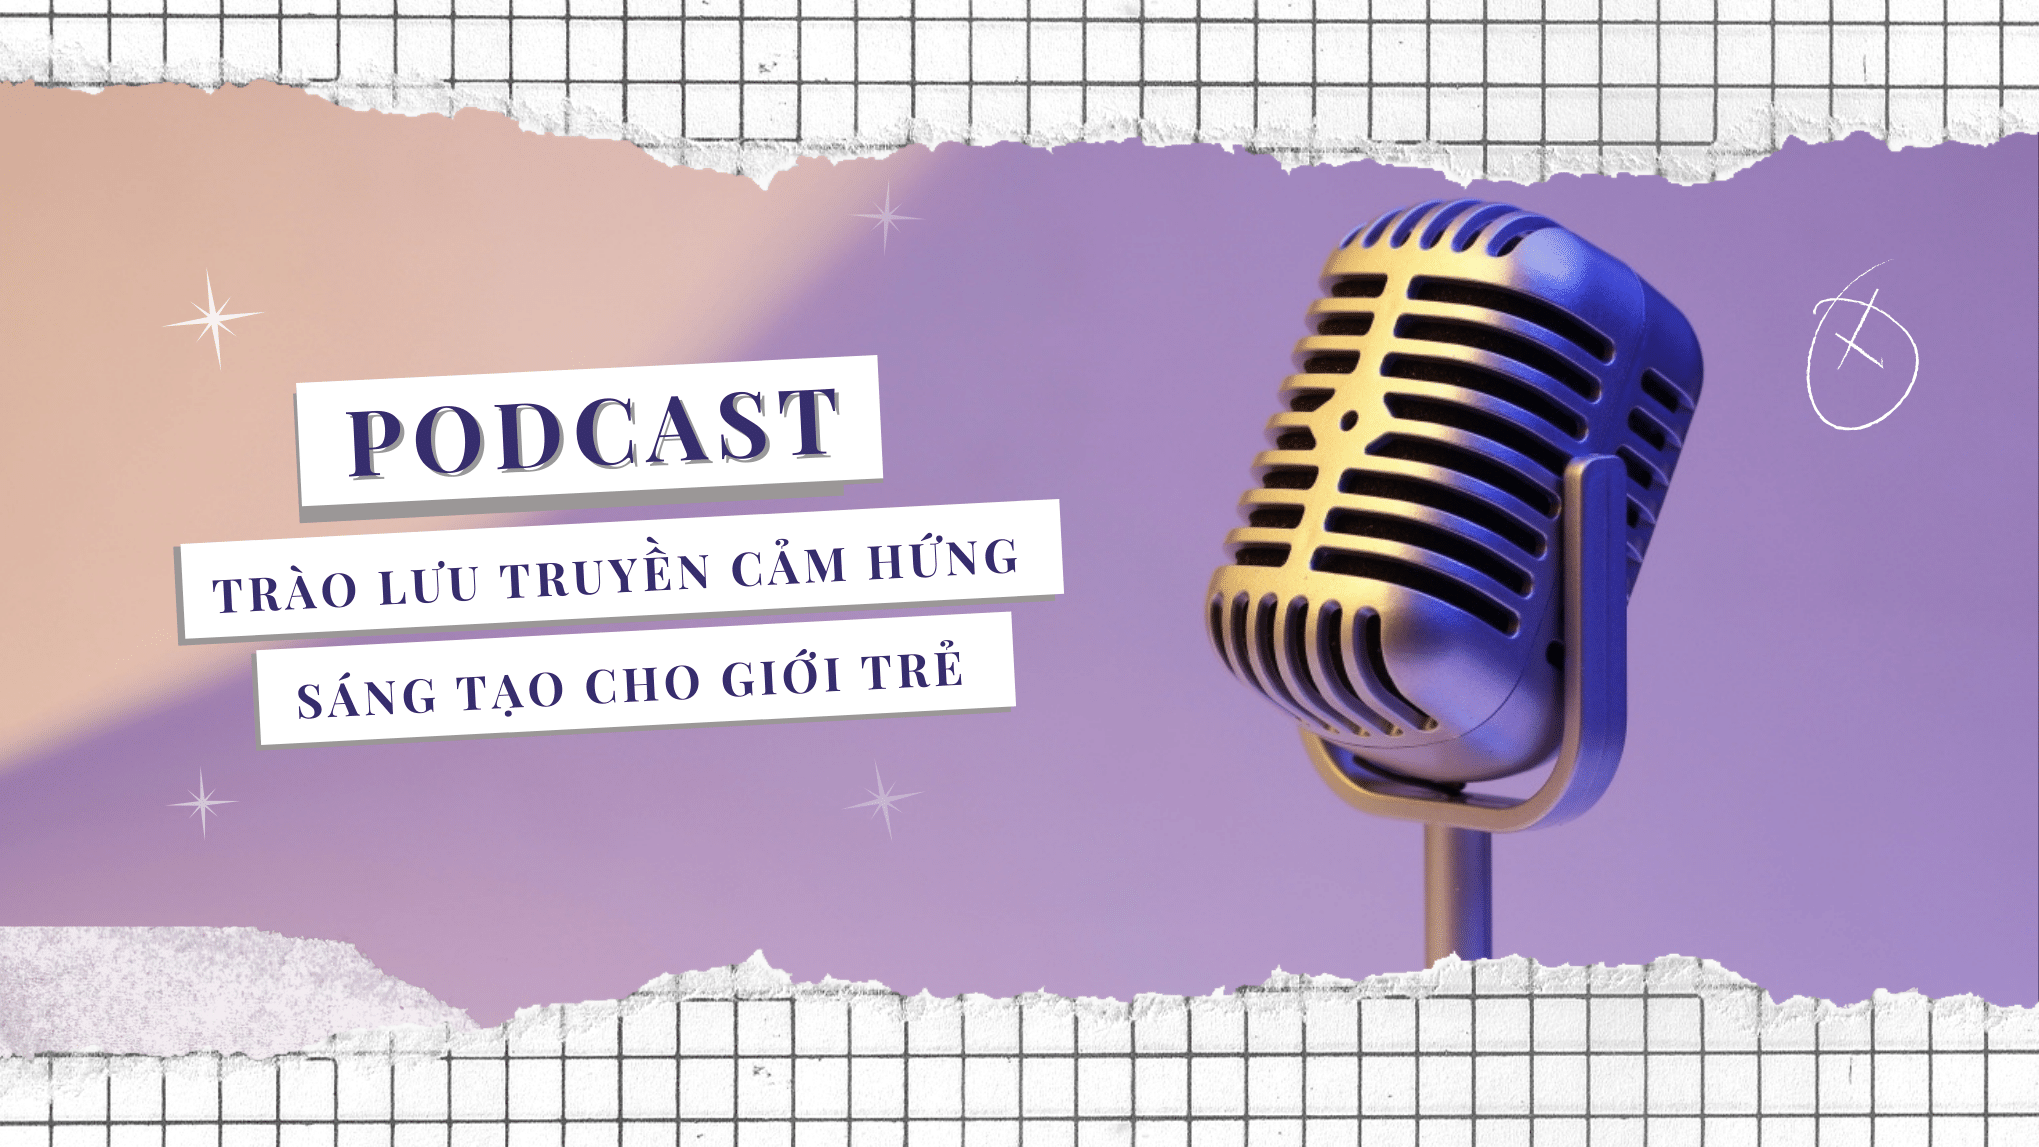 Podcast - Trào lưu truyền cảm hứng sáng tạo cho giới trẻ